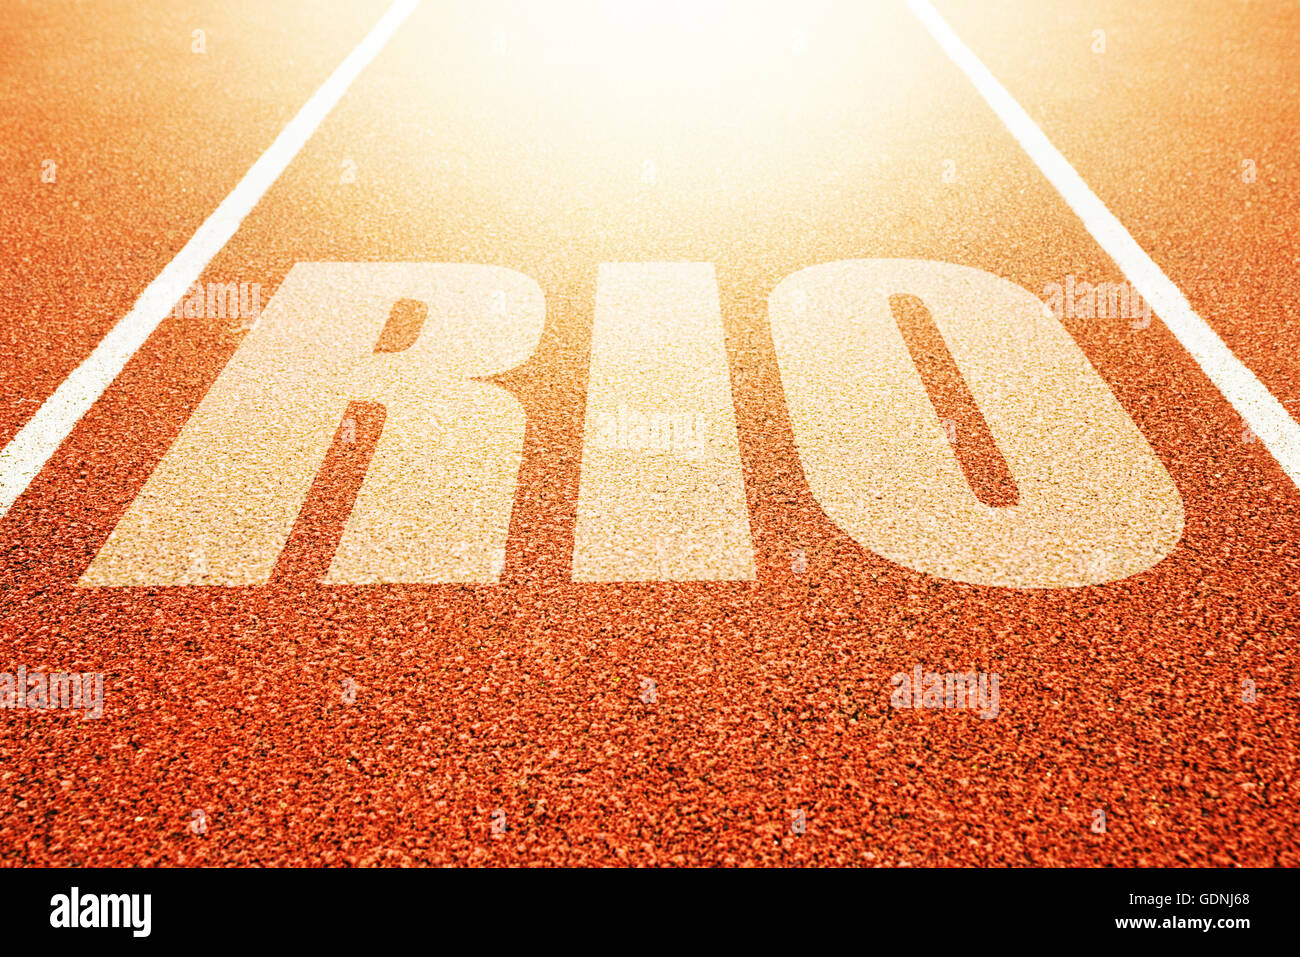 Rio-Titel auf sportliche Laufbahn, Konzeptbild für Sport-Event in Brasilien stattfindet Stockfoto